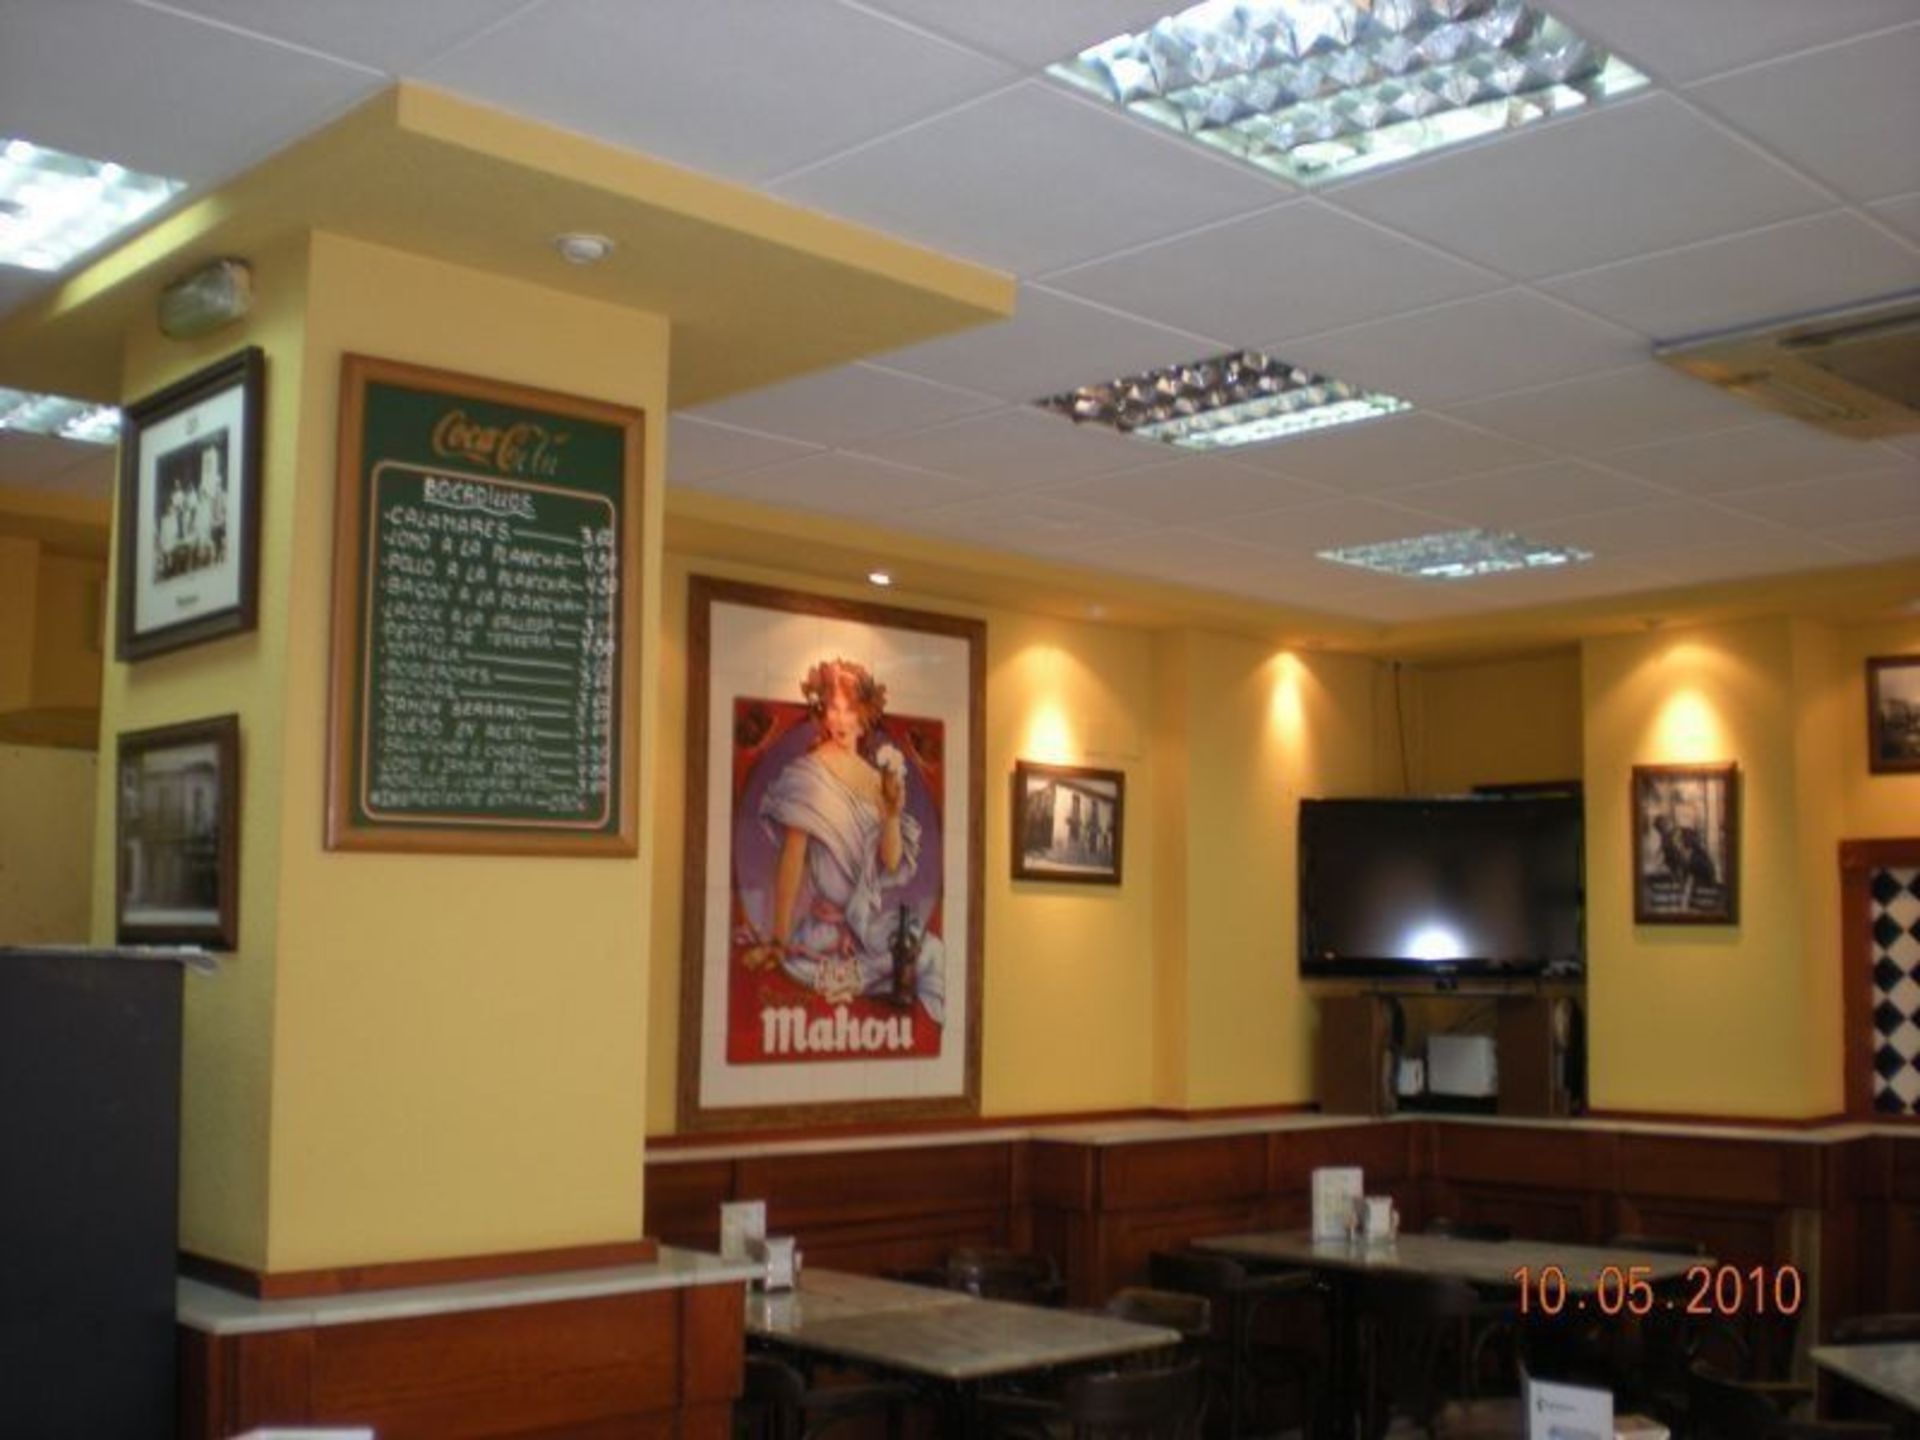 Proyecto de reforma y ampliación de actividad de dos cafeterías en Getafe